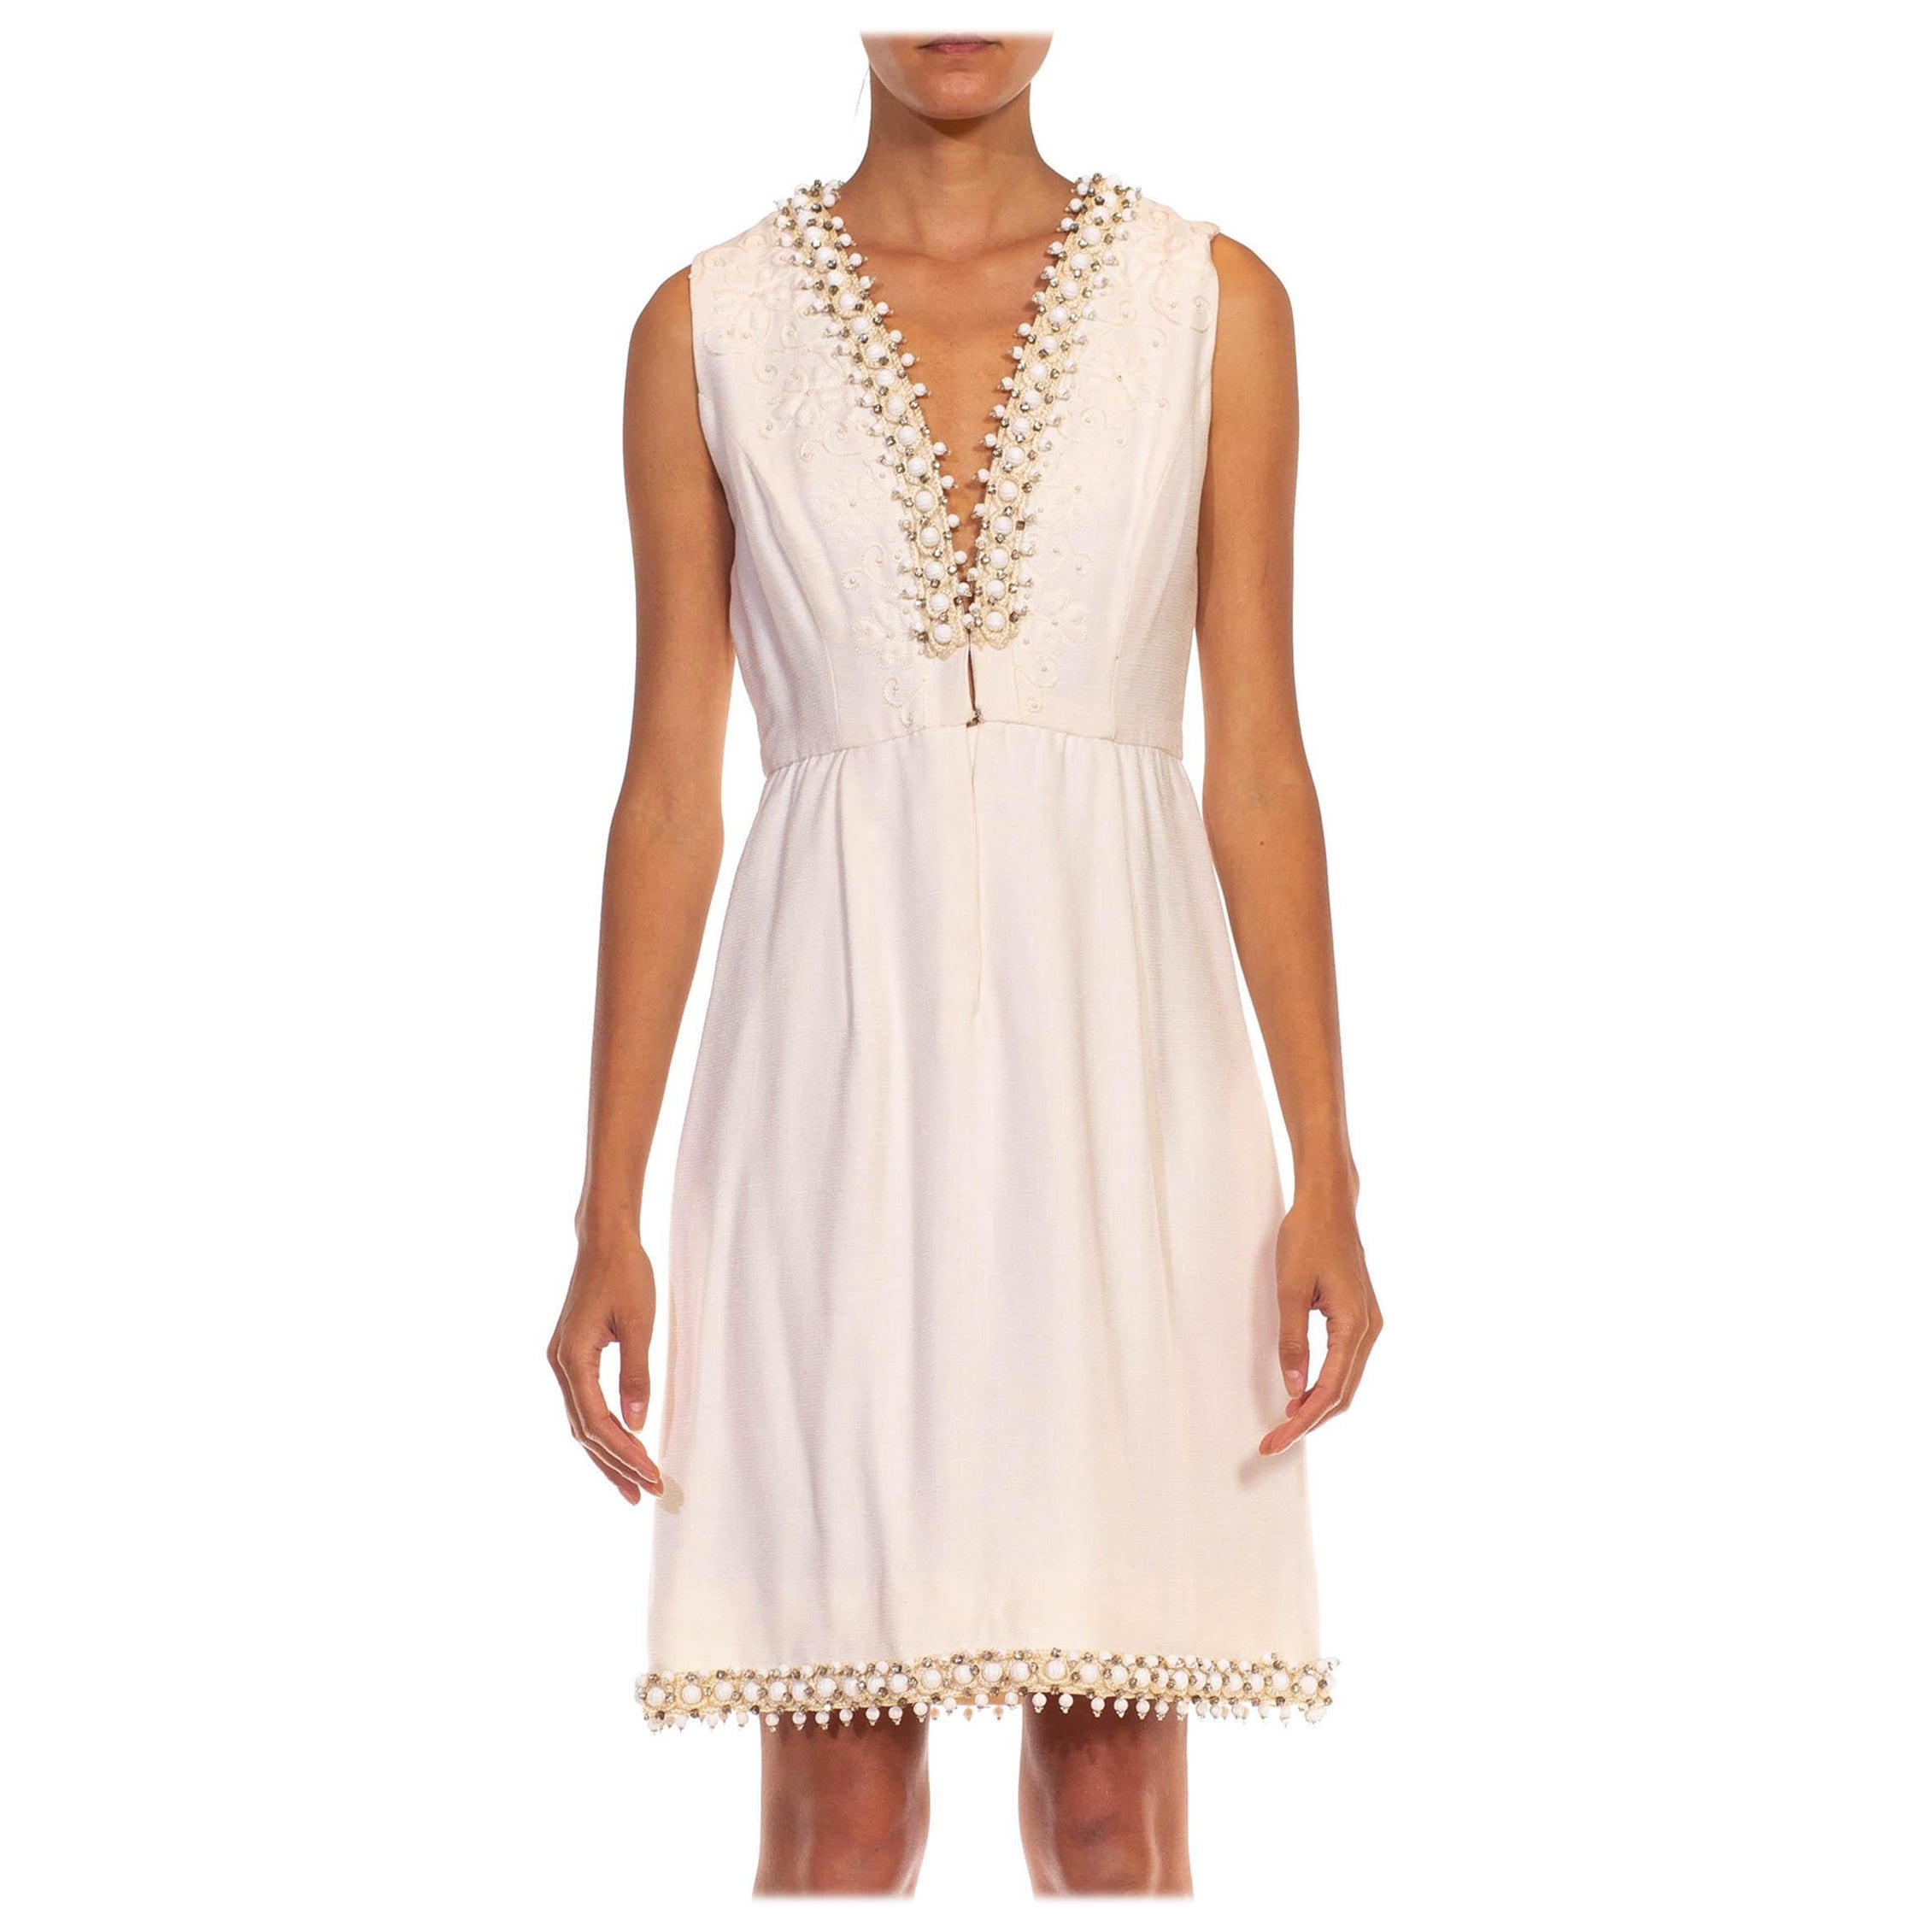 1960S OSCAR DE LA RENTA White Wool Blend Plunging V Neck Mod Dress With Crystals For Sale